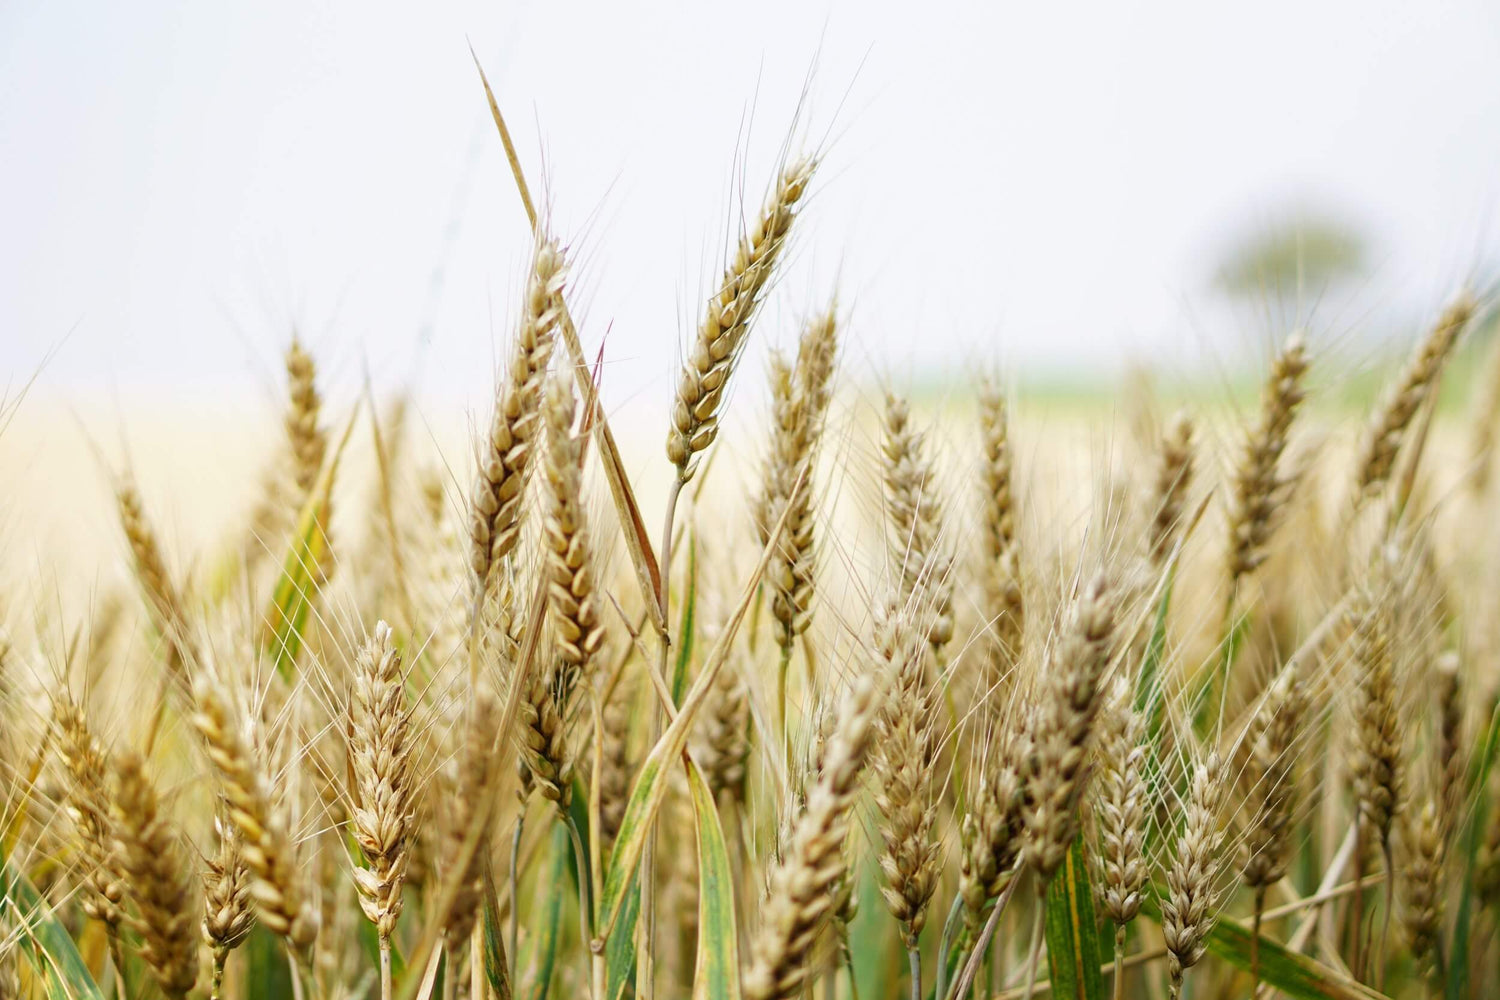 Grain in a field